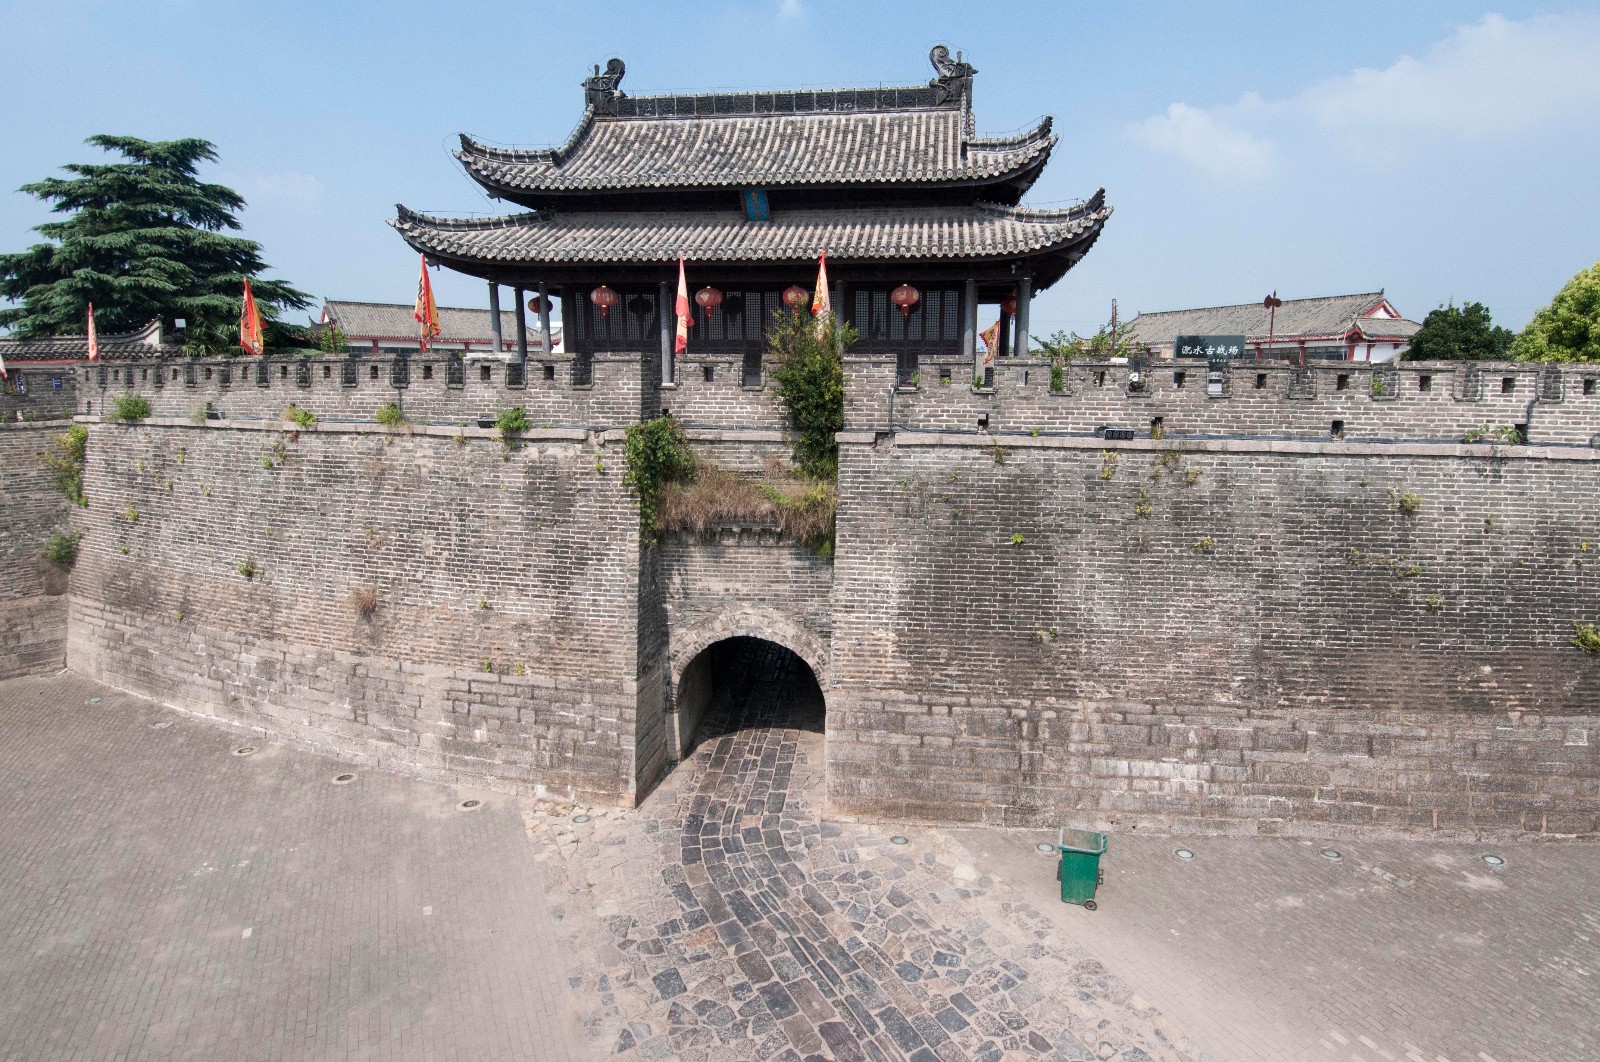 而西安,南京,平遥,开封等几十个城市的古城墙还在?